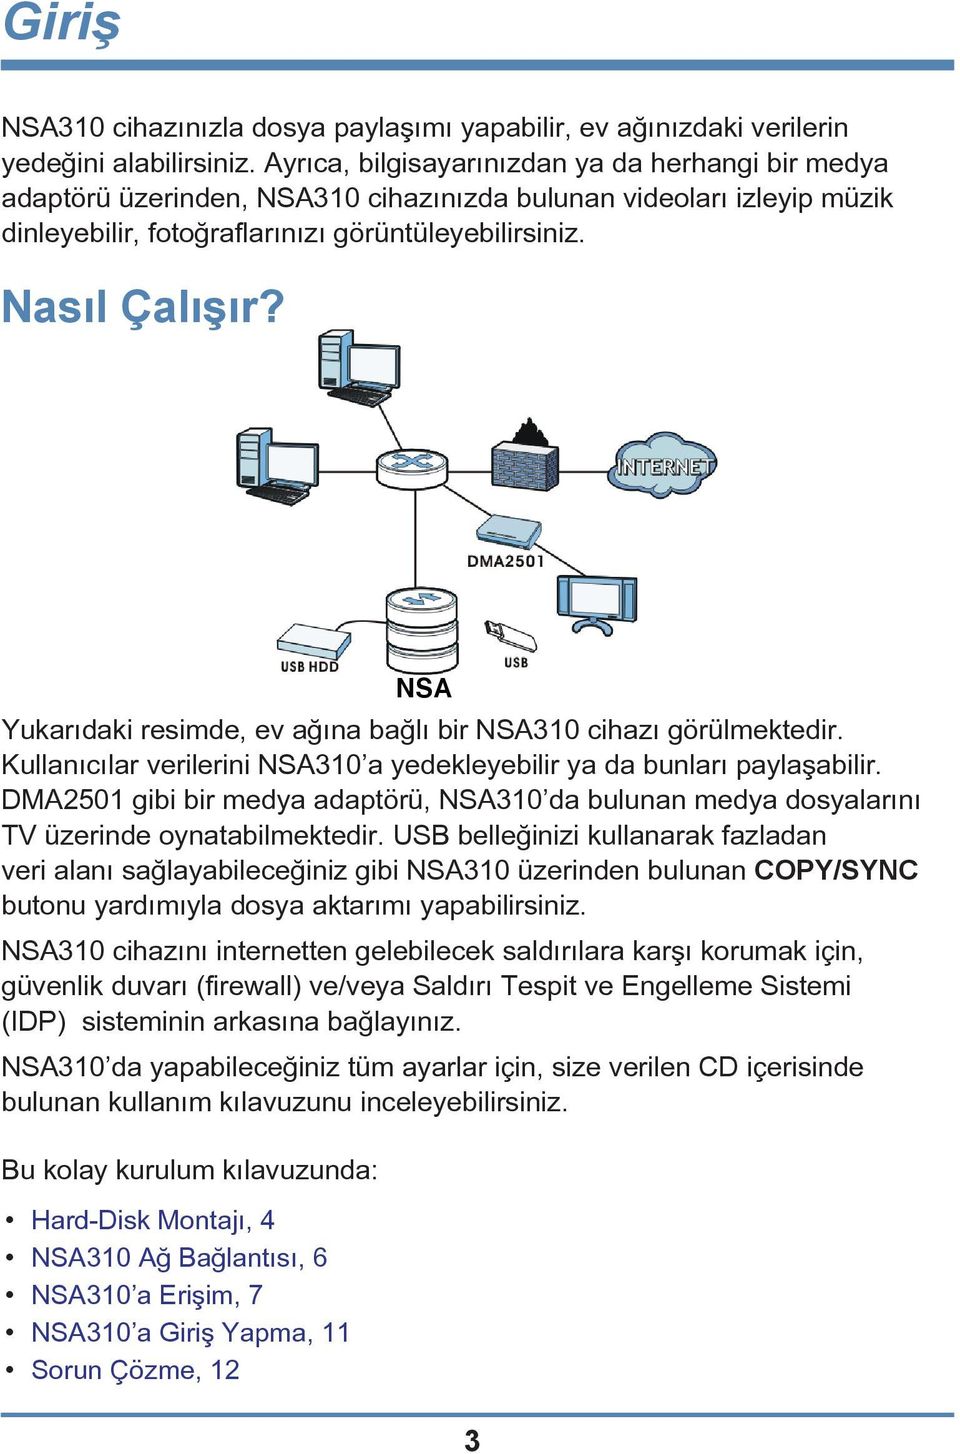 Yukarıdaki resimde, ev ağına bağlı bir NSA310 cihazı görülmektedir. Kullanıcılar verilerini NSA310 a yedekleyebilir ya da bunları paylaşabilir.